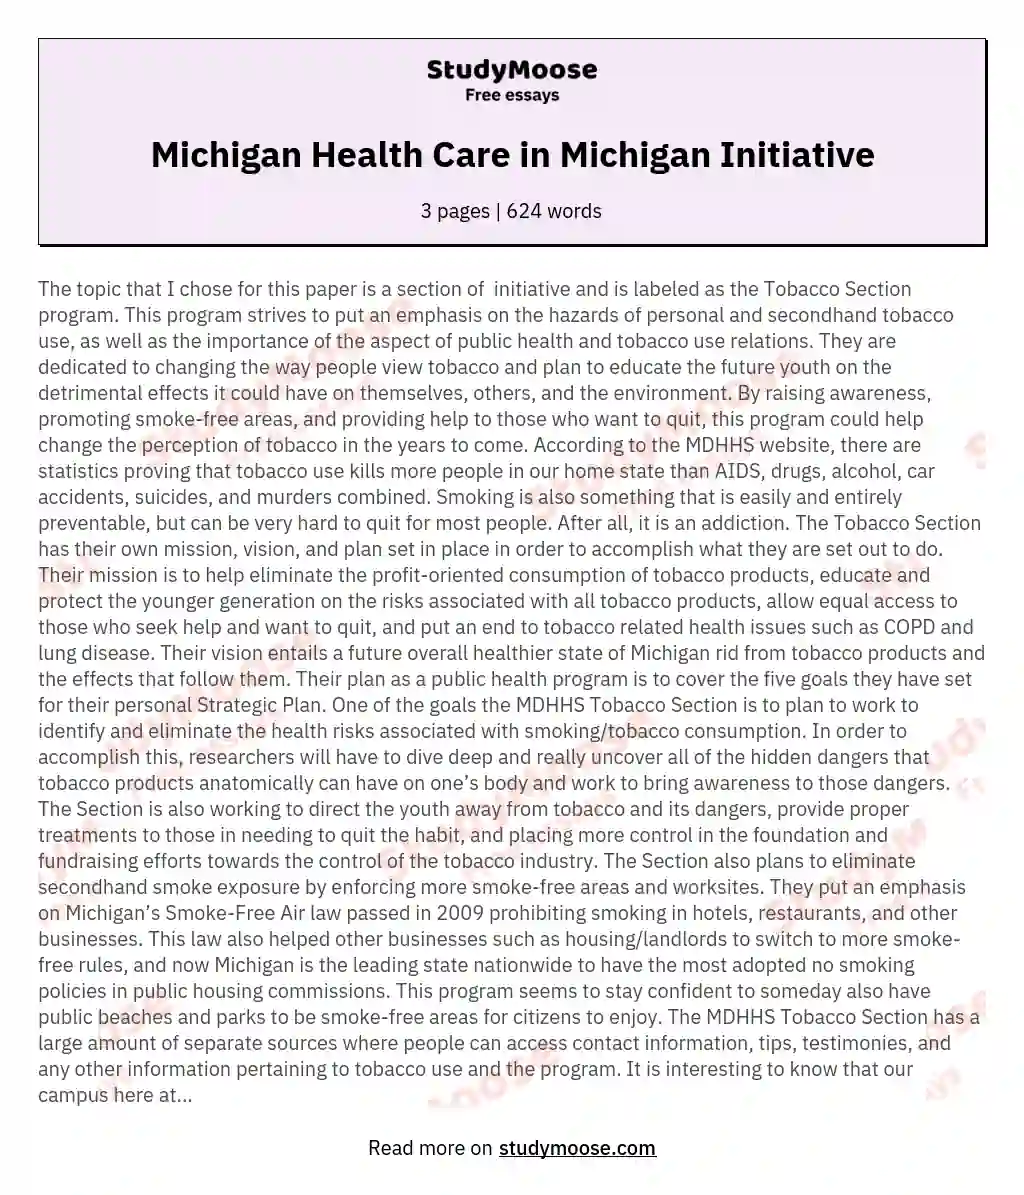 Michigan Health Care in Michigan Initiative essay